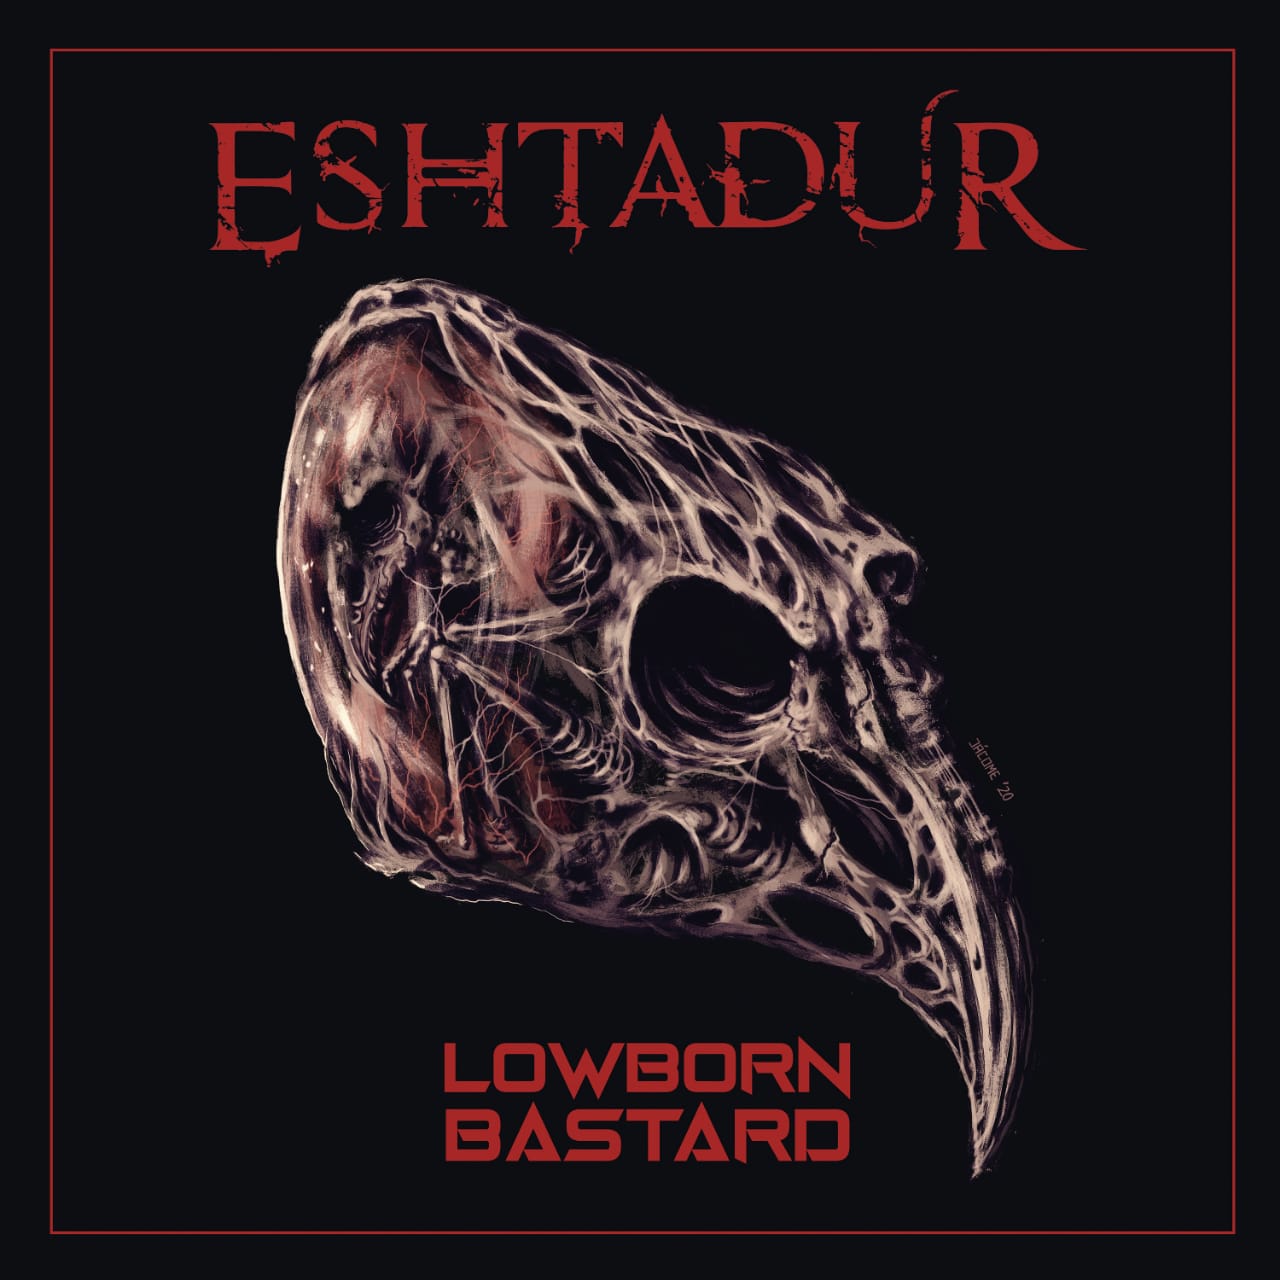 Eshtadur Lowborn Bastard - ESHTADUR presenta su nuevo sencillo “Lowborn Bastard”